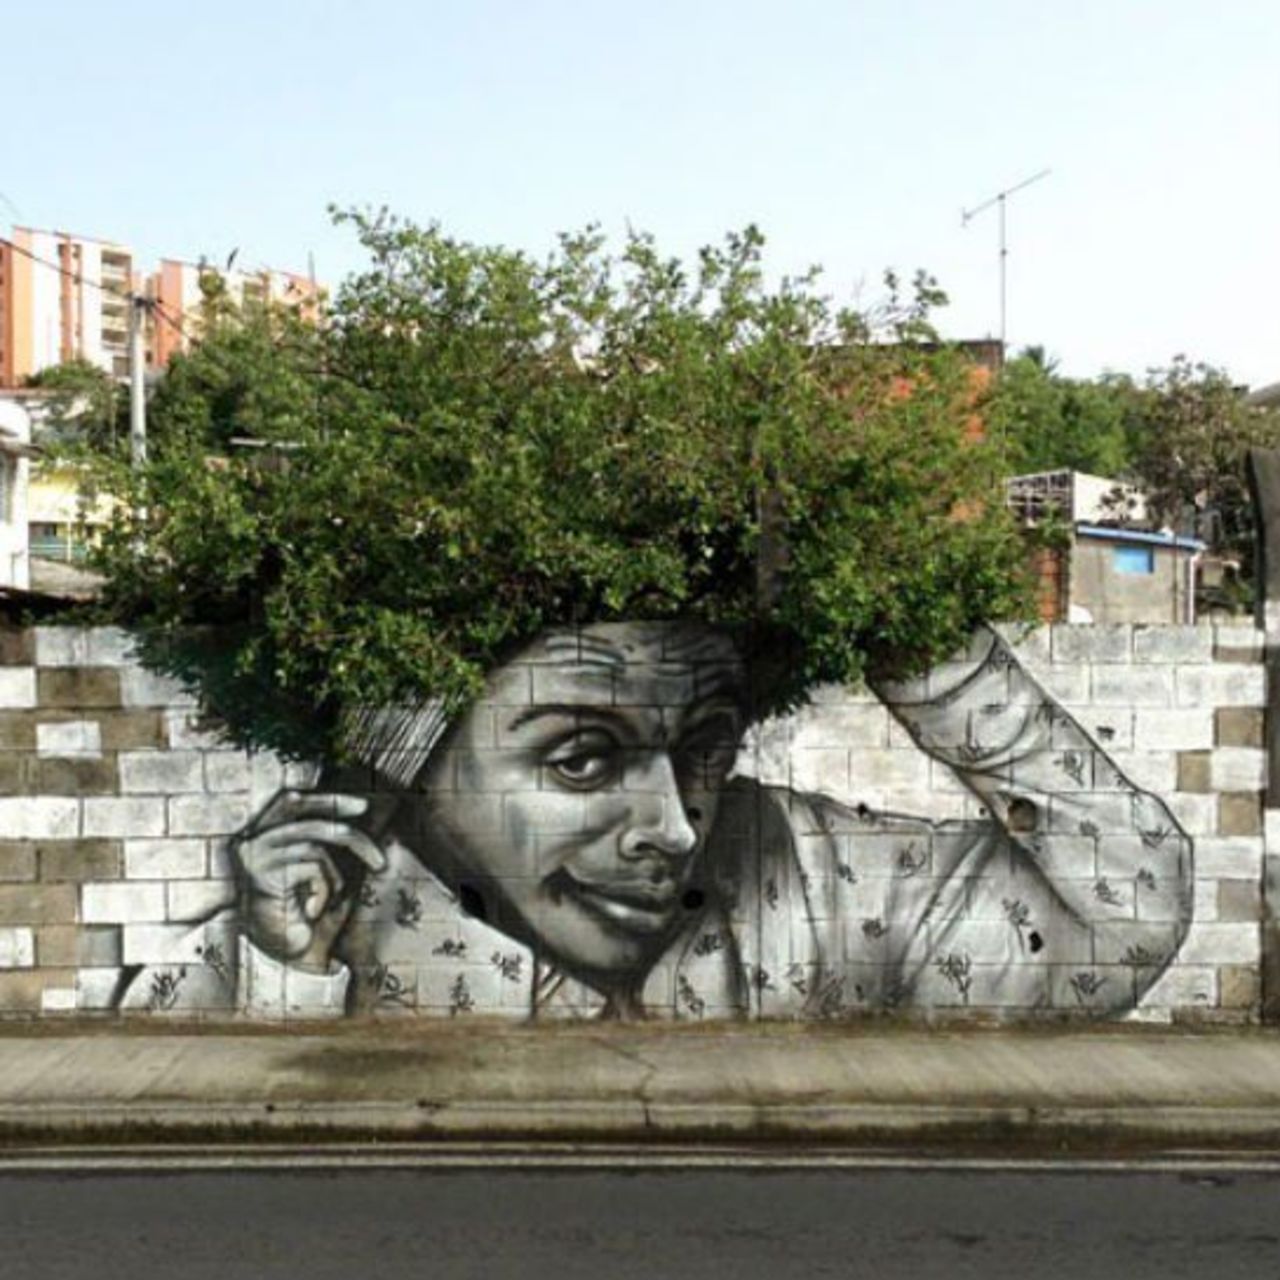 Schicke Frisur!#streetart #mural #graffiti #art https://t.co/v0YYhMylj9